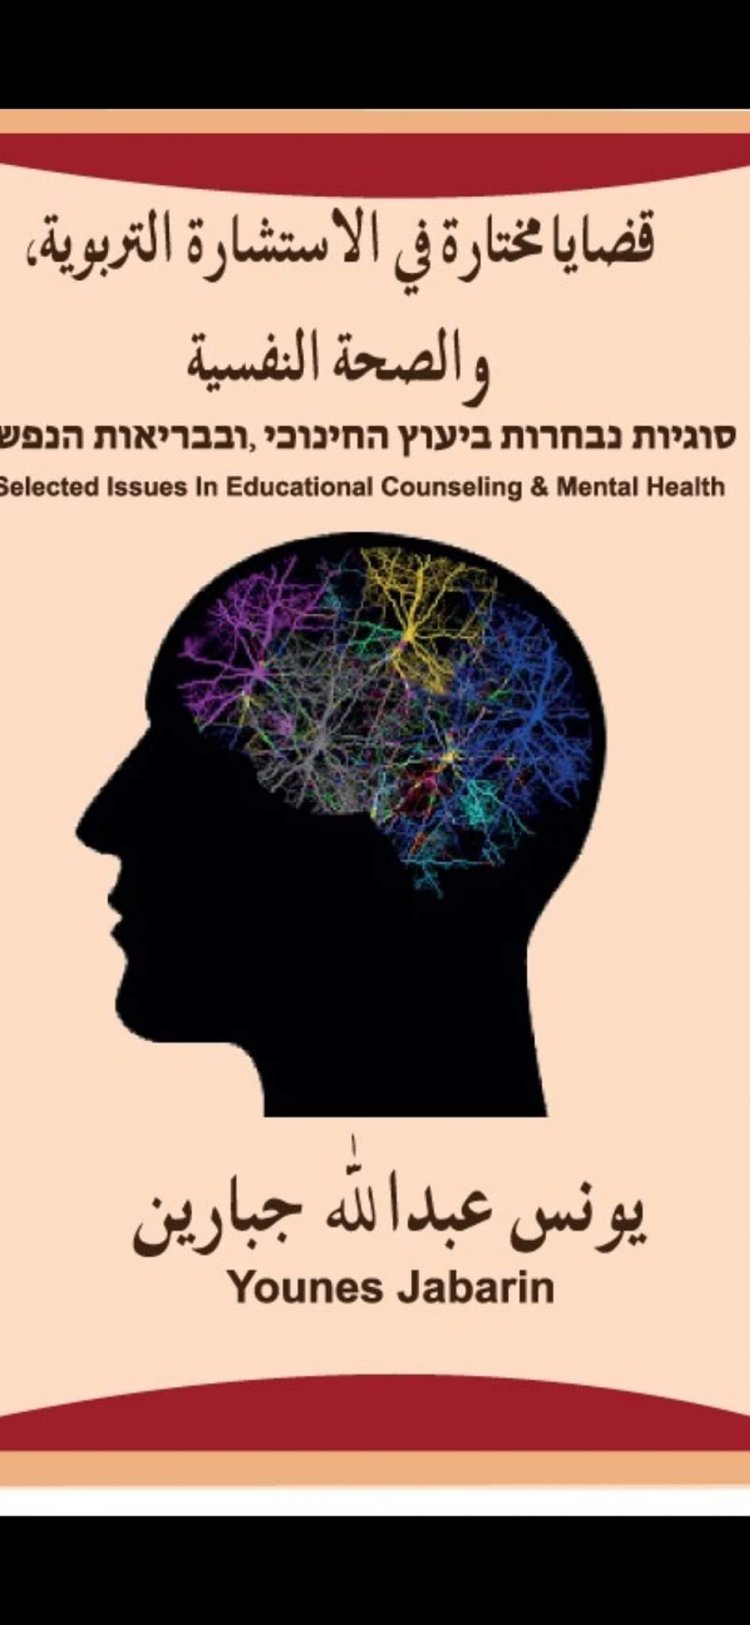 مع كتاب قضايا مختارة في الاستشارة التربوية، والصحة النفسية للأستاذ يونس جبارين